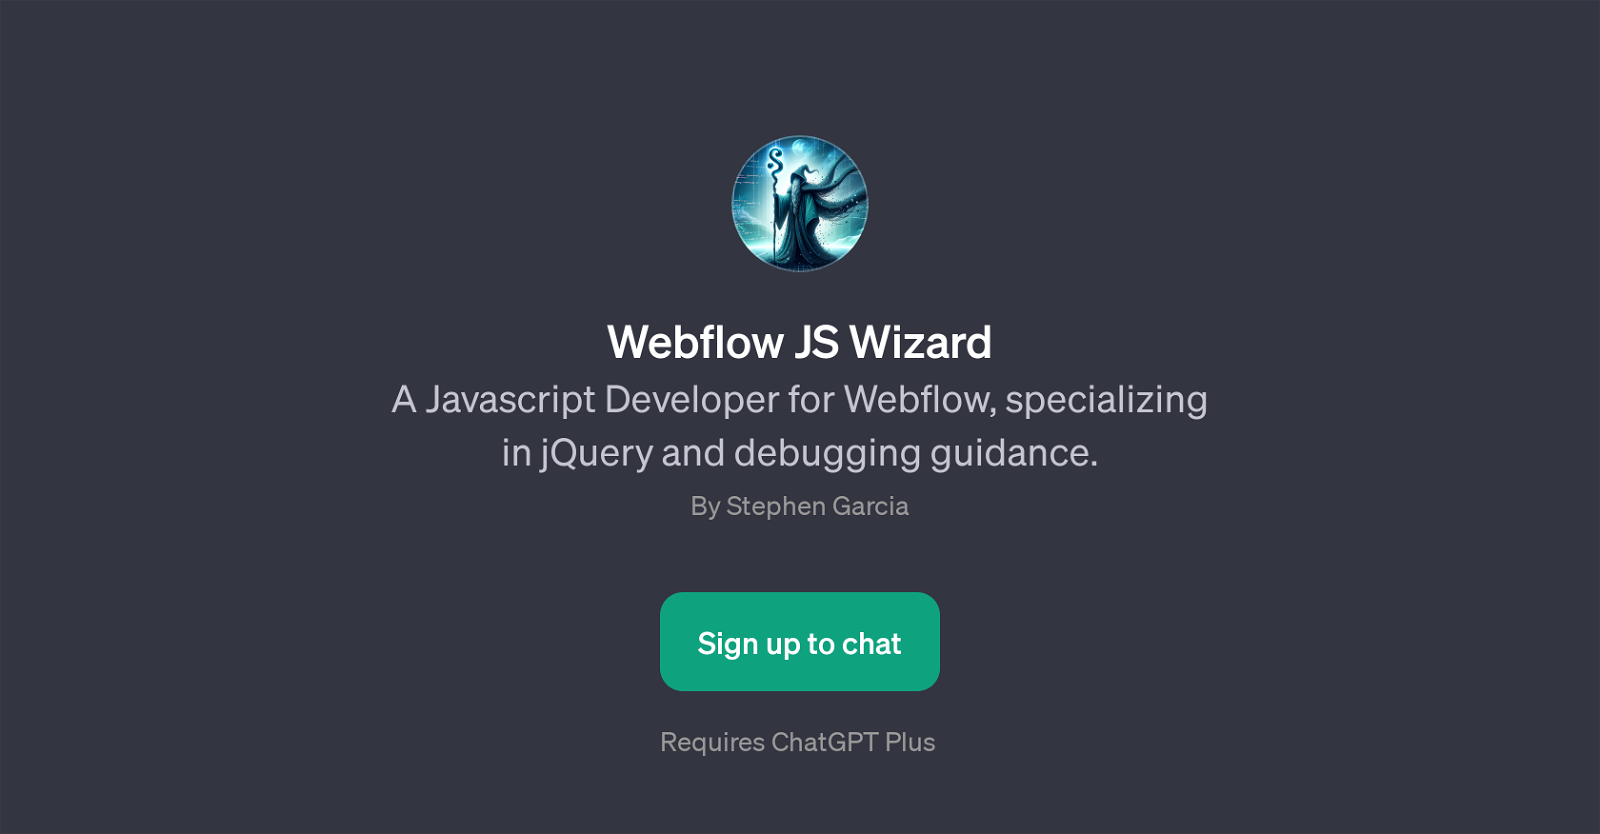 Webflow JS Wizard website